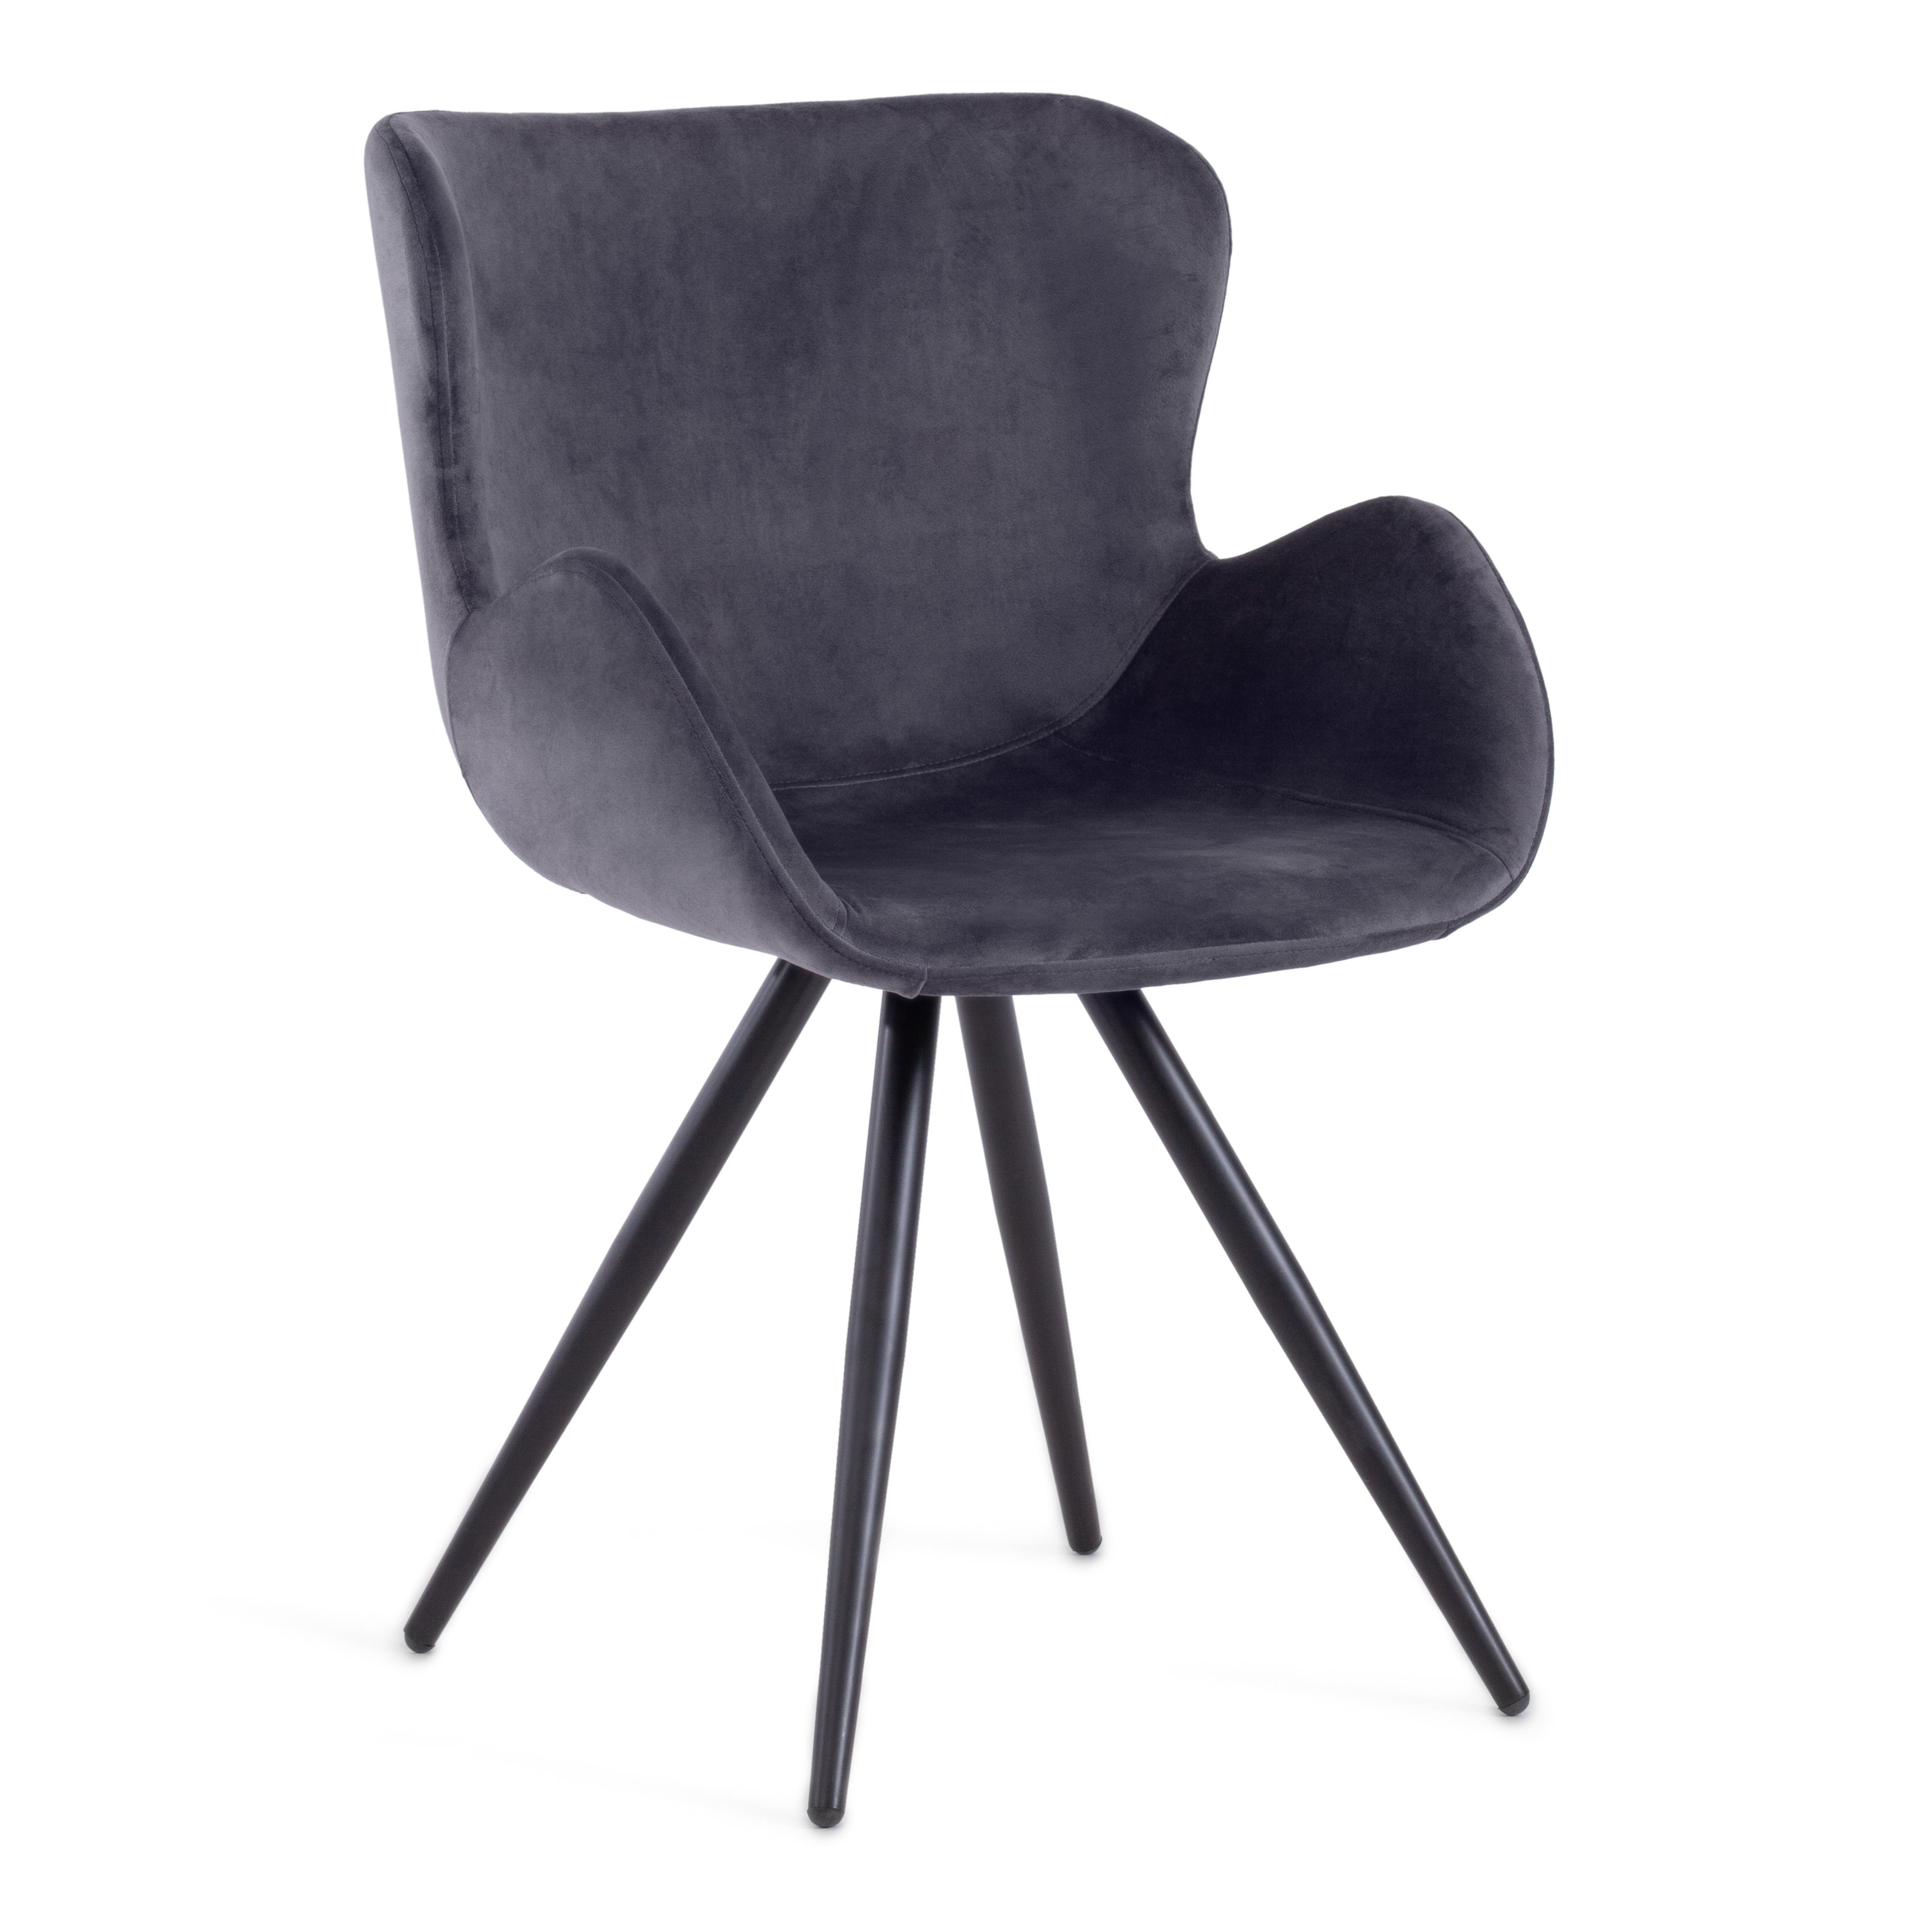 Кресло BOEING ( mod. 9120) металл/вельвет, 42x58x84.5x47см, серый (HLR 21)/черный